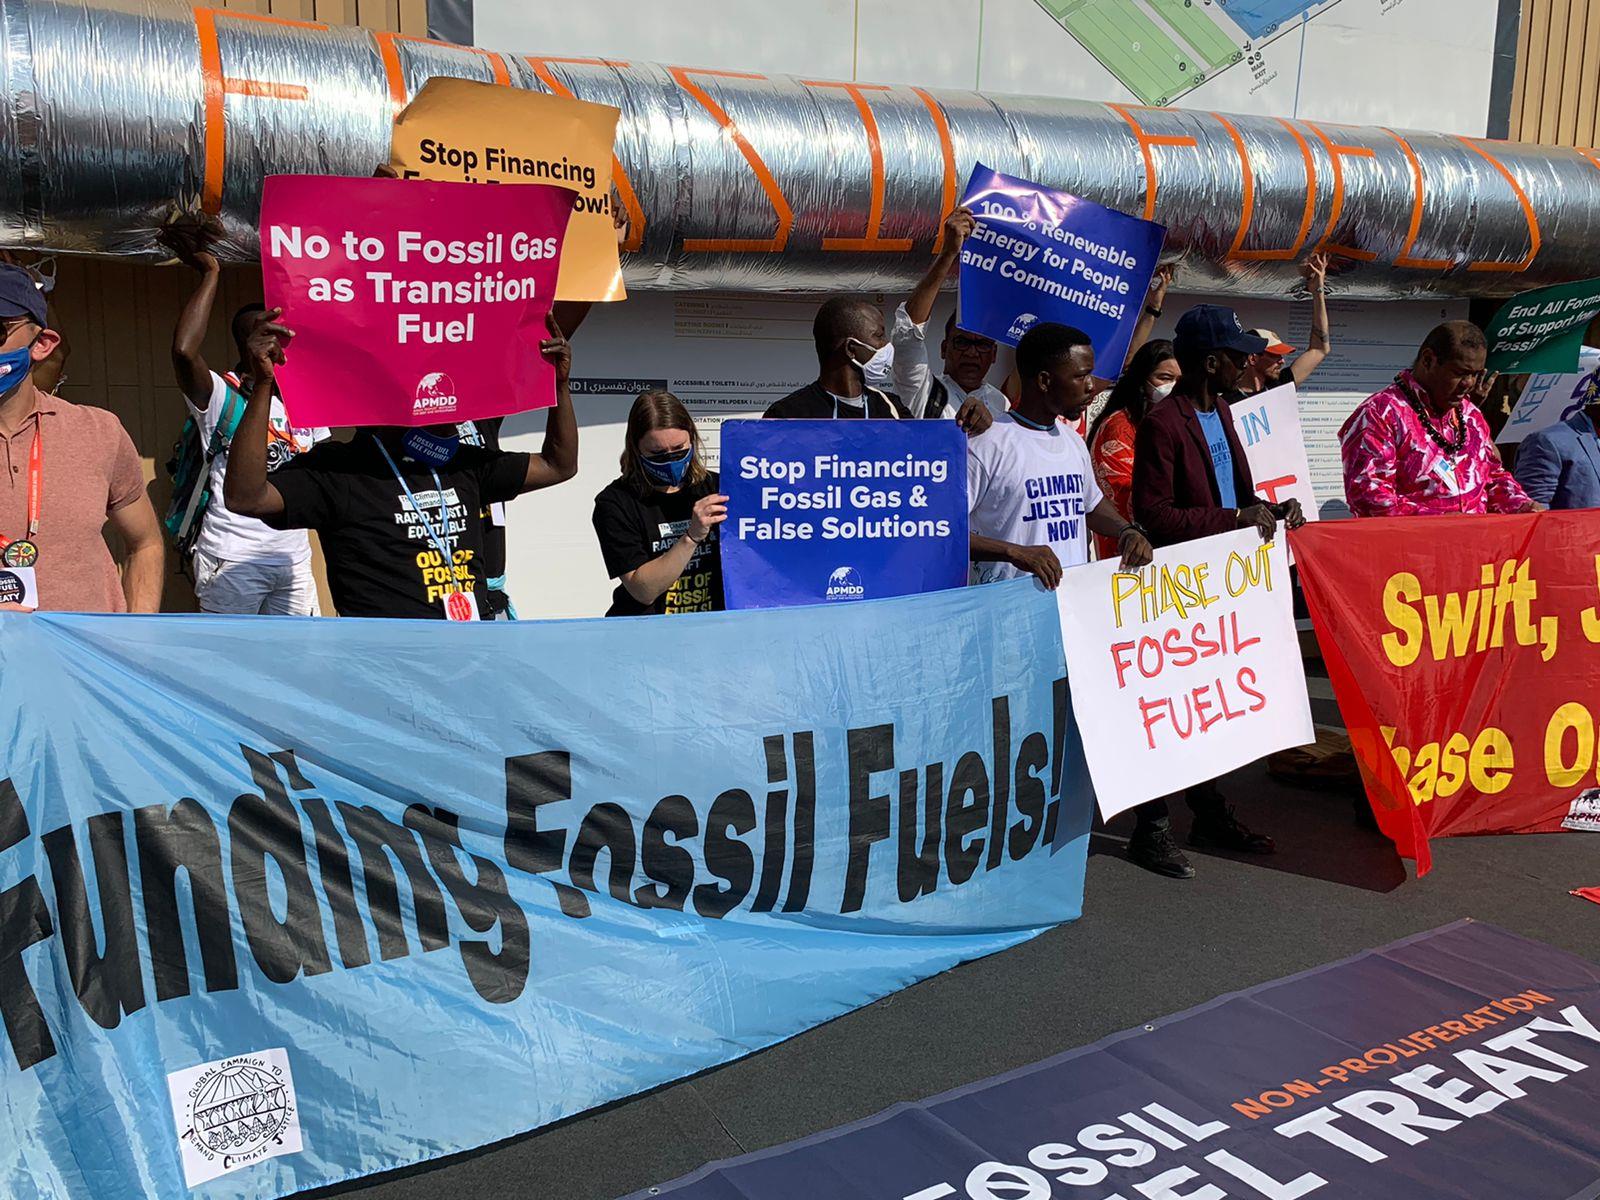 نشطاء من أندونيسيا يطالبون بالتوقف عن استخدام الوقود الأحفوري